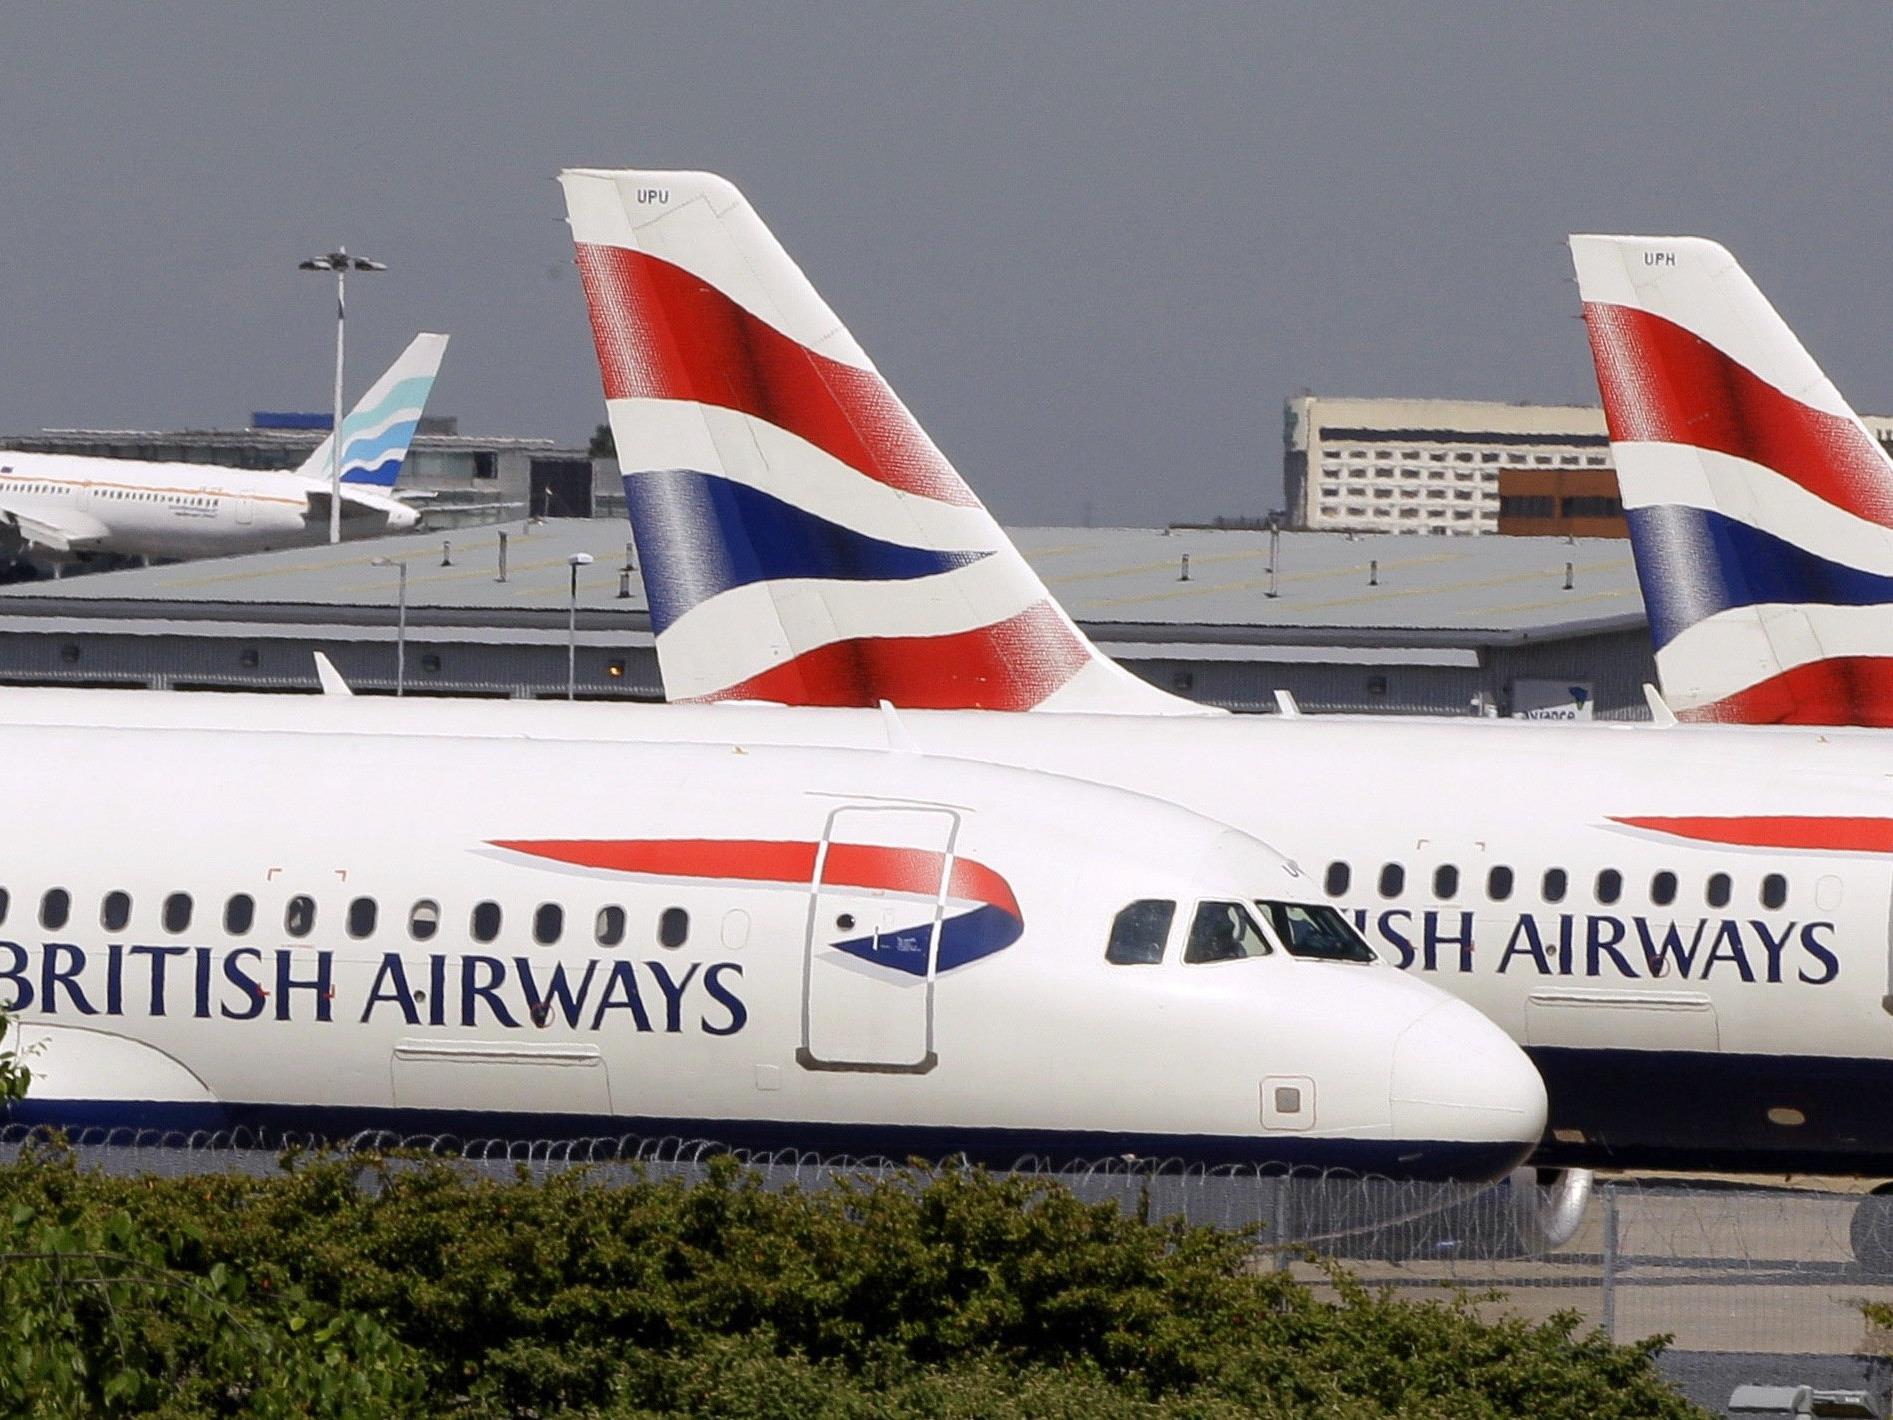 Der A320 der British Airways konnte trotz Zusammenstoß mit einer Drohne sicher landen.